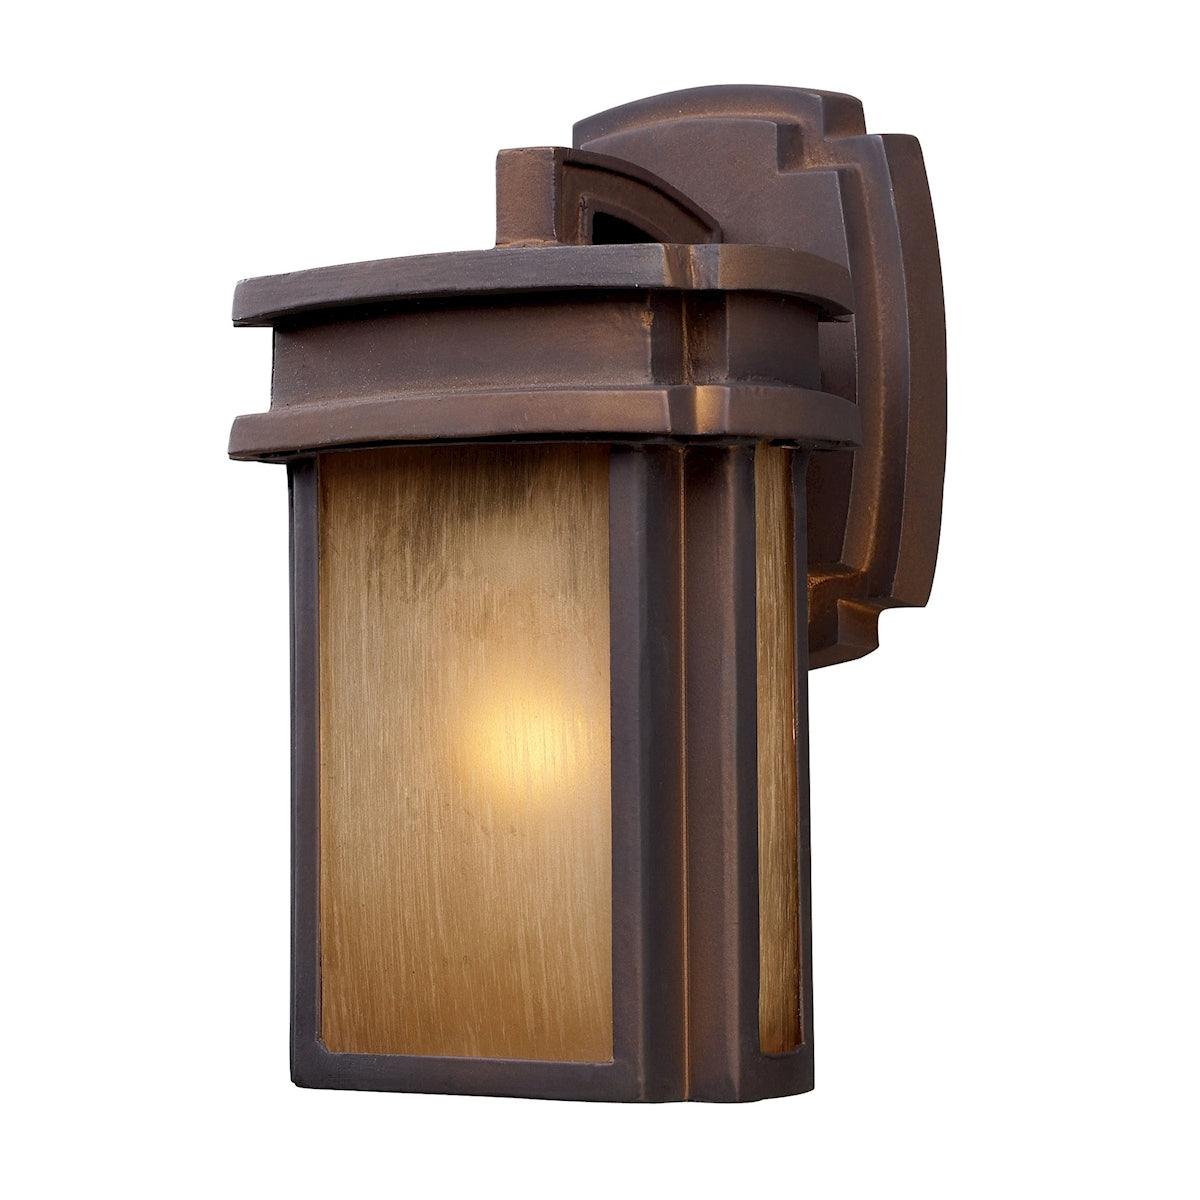 ELK Lighting 42146/1 Sedona 1-Light Outdoor Wall Lamp in Hazelnut Bronze